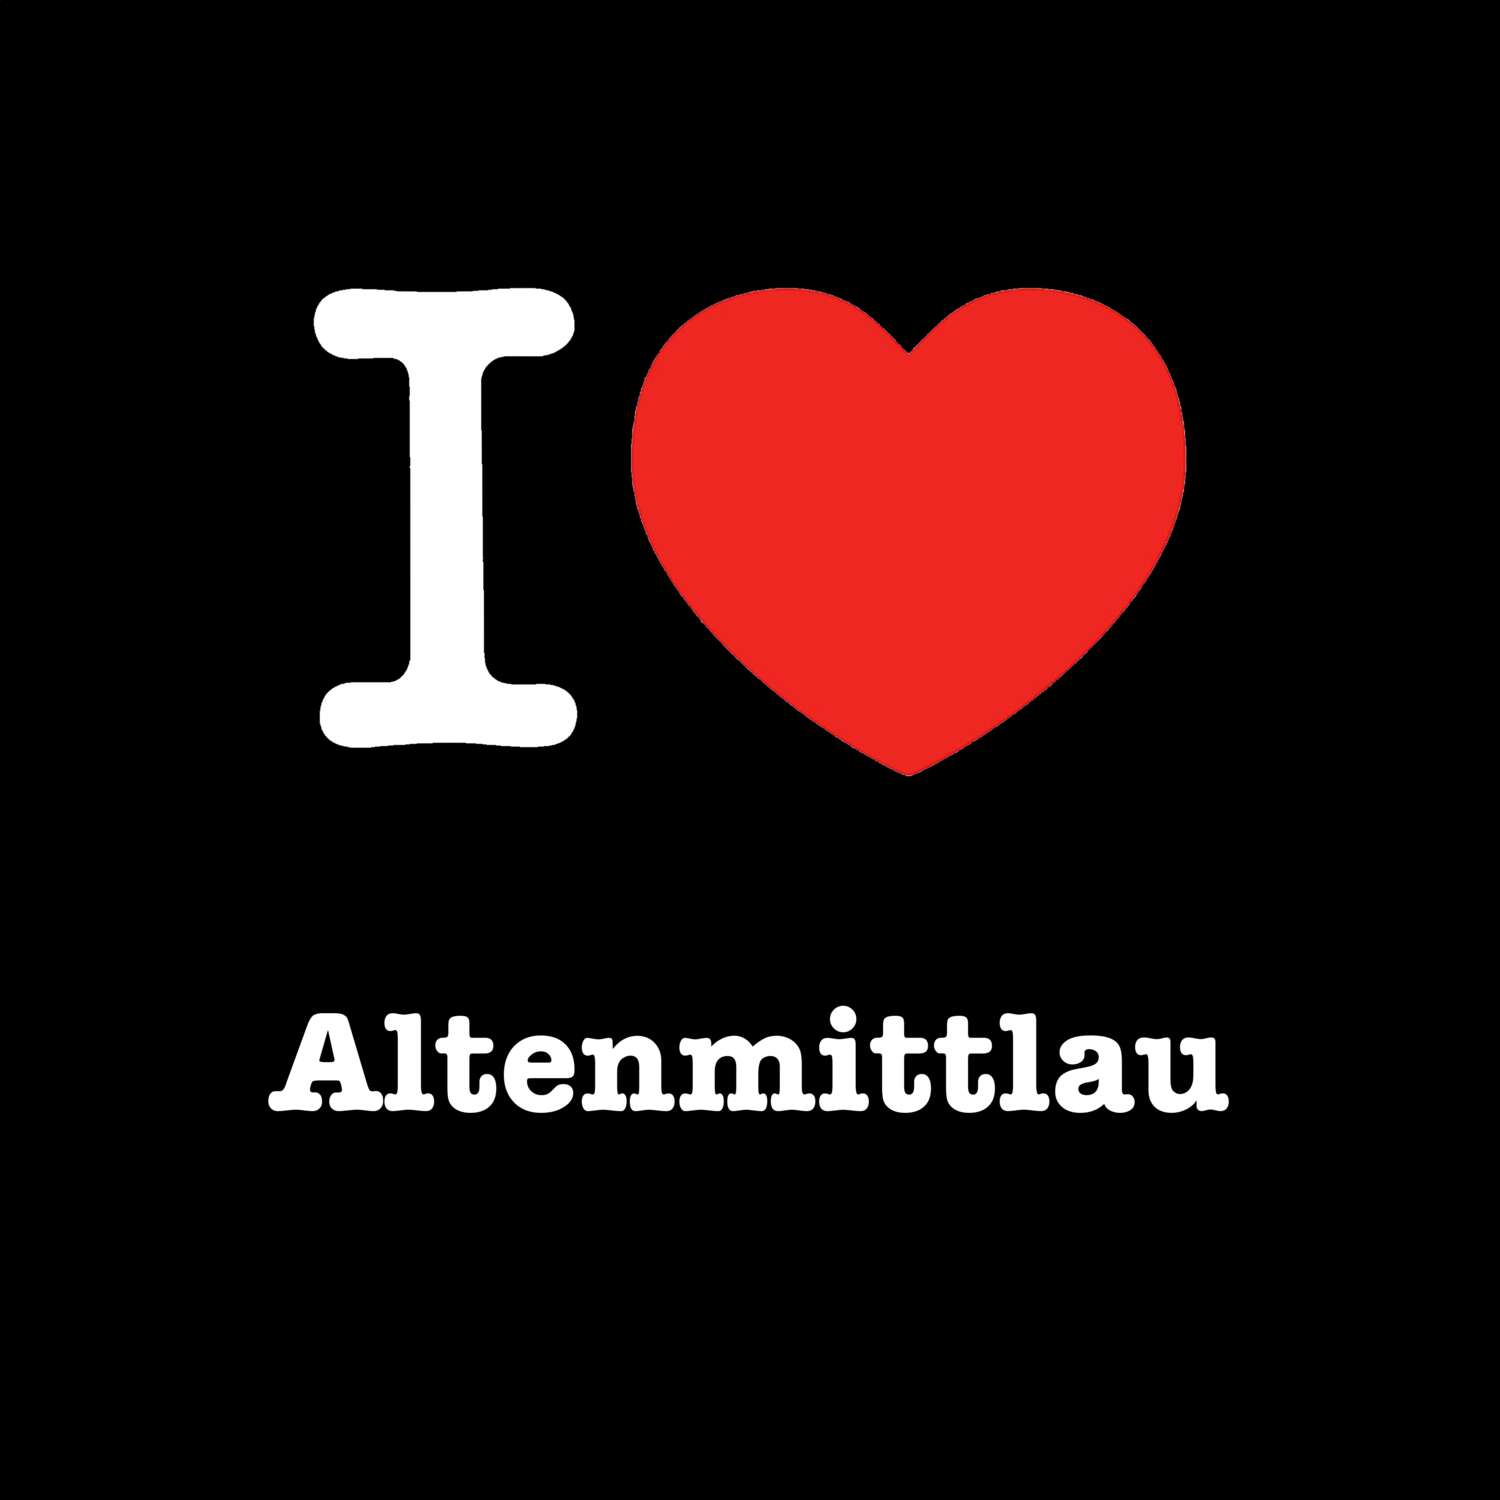 Altenmittlau T-Shirt »I love«